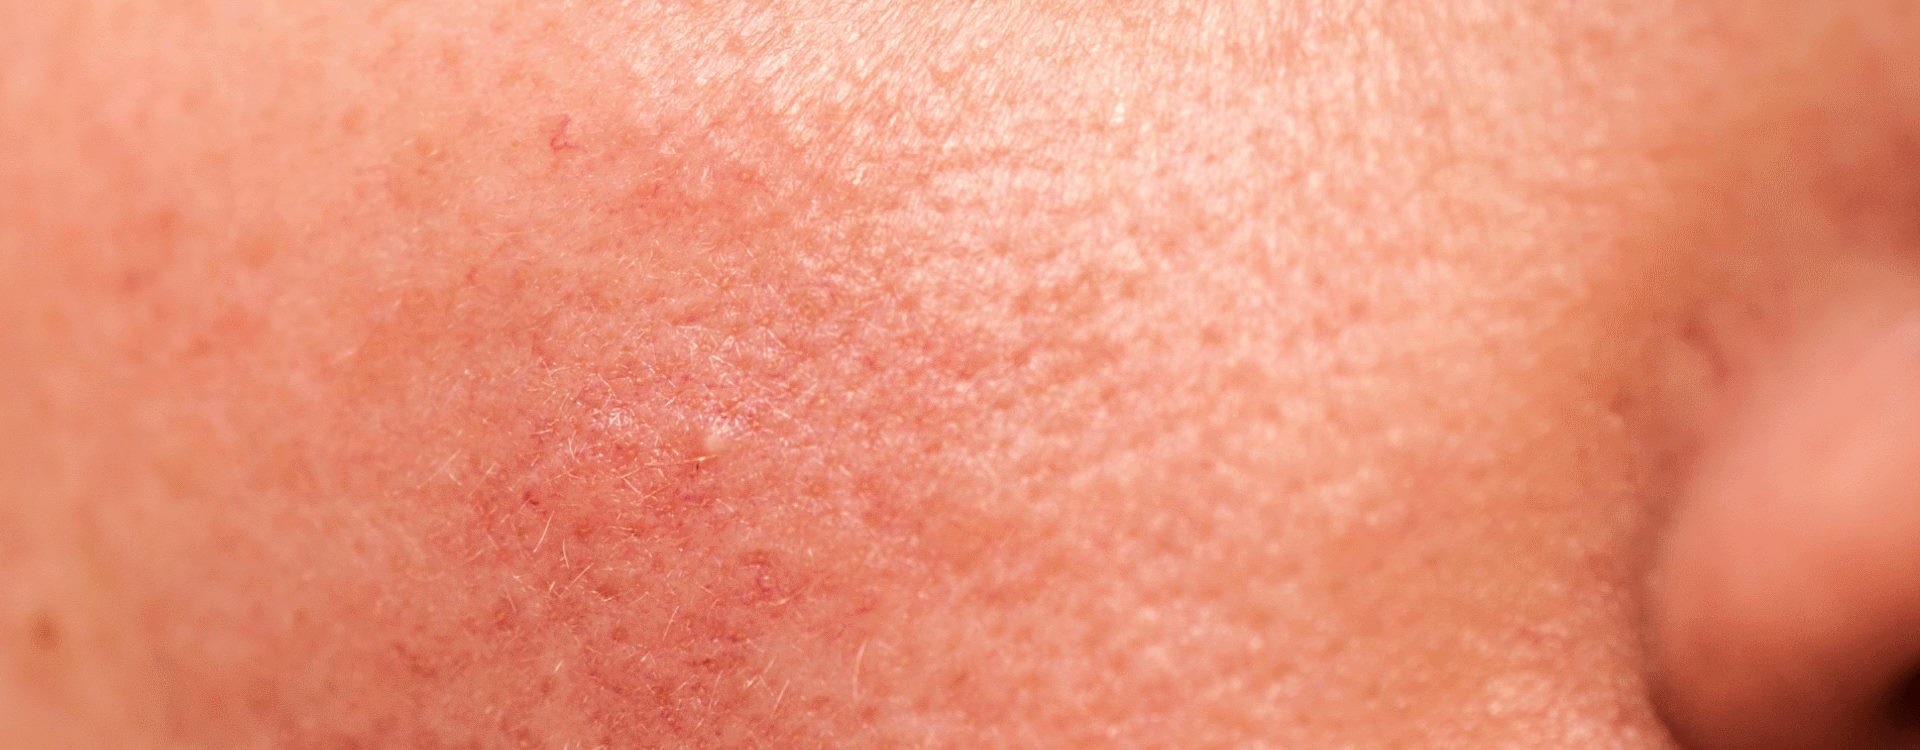 Rosácea - Tratamento Caseiro - Os Melhores Produtos para a tua Pele